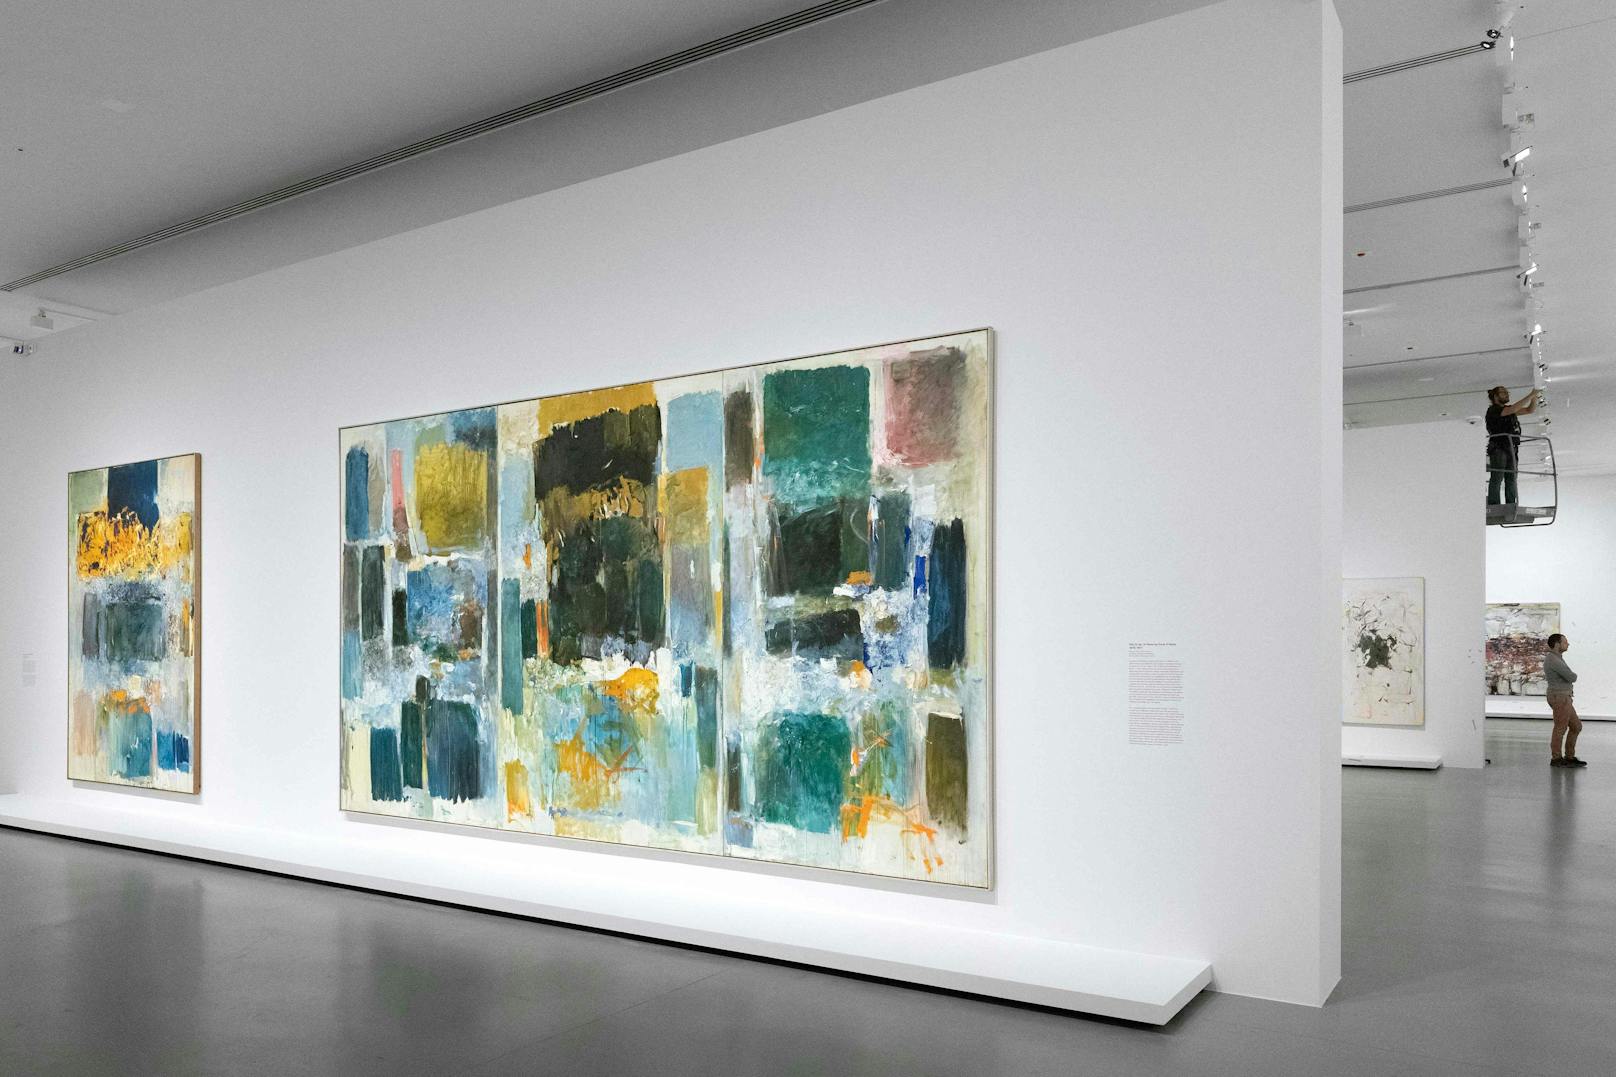 Die Ausstellung "Monet – Mitchell" ist bis 27. Februar in der Fondation Louis Vuitton zu sehen.